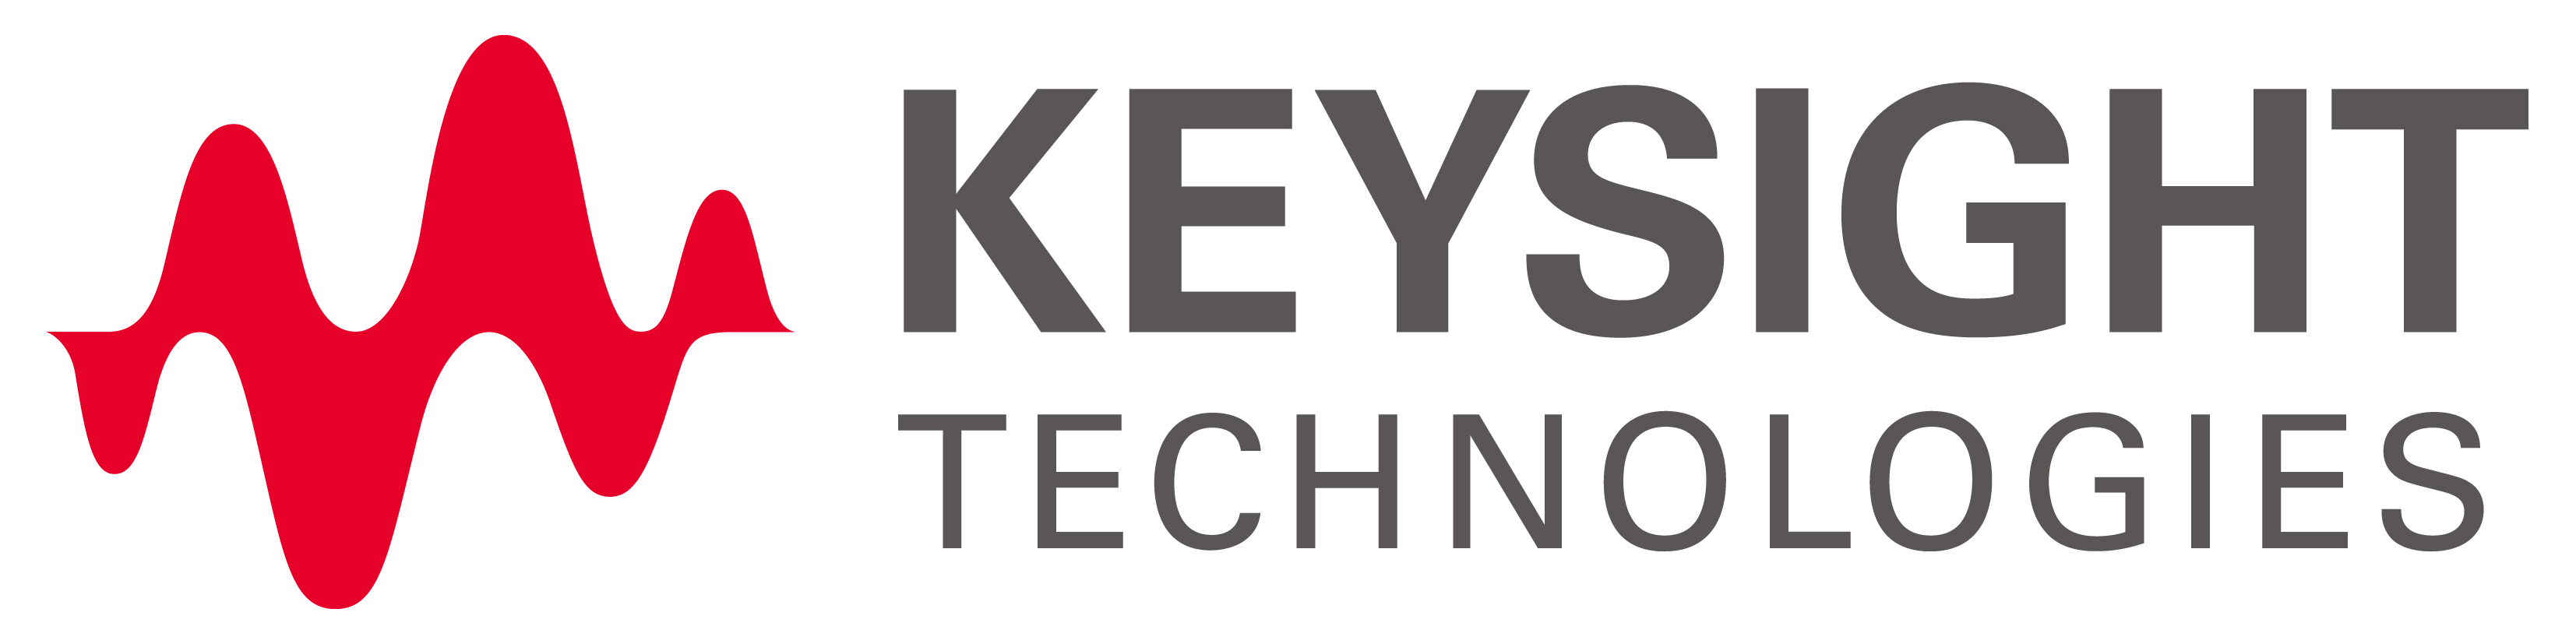 Keysight_logo.jpg